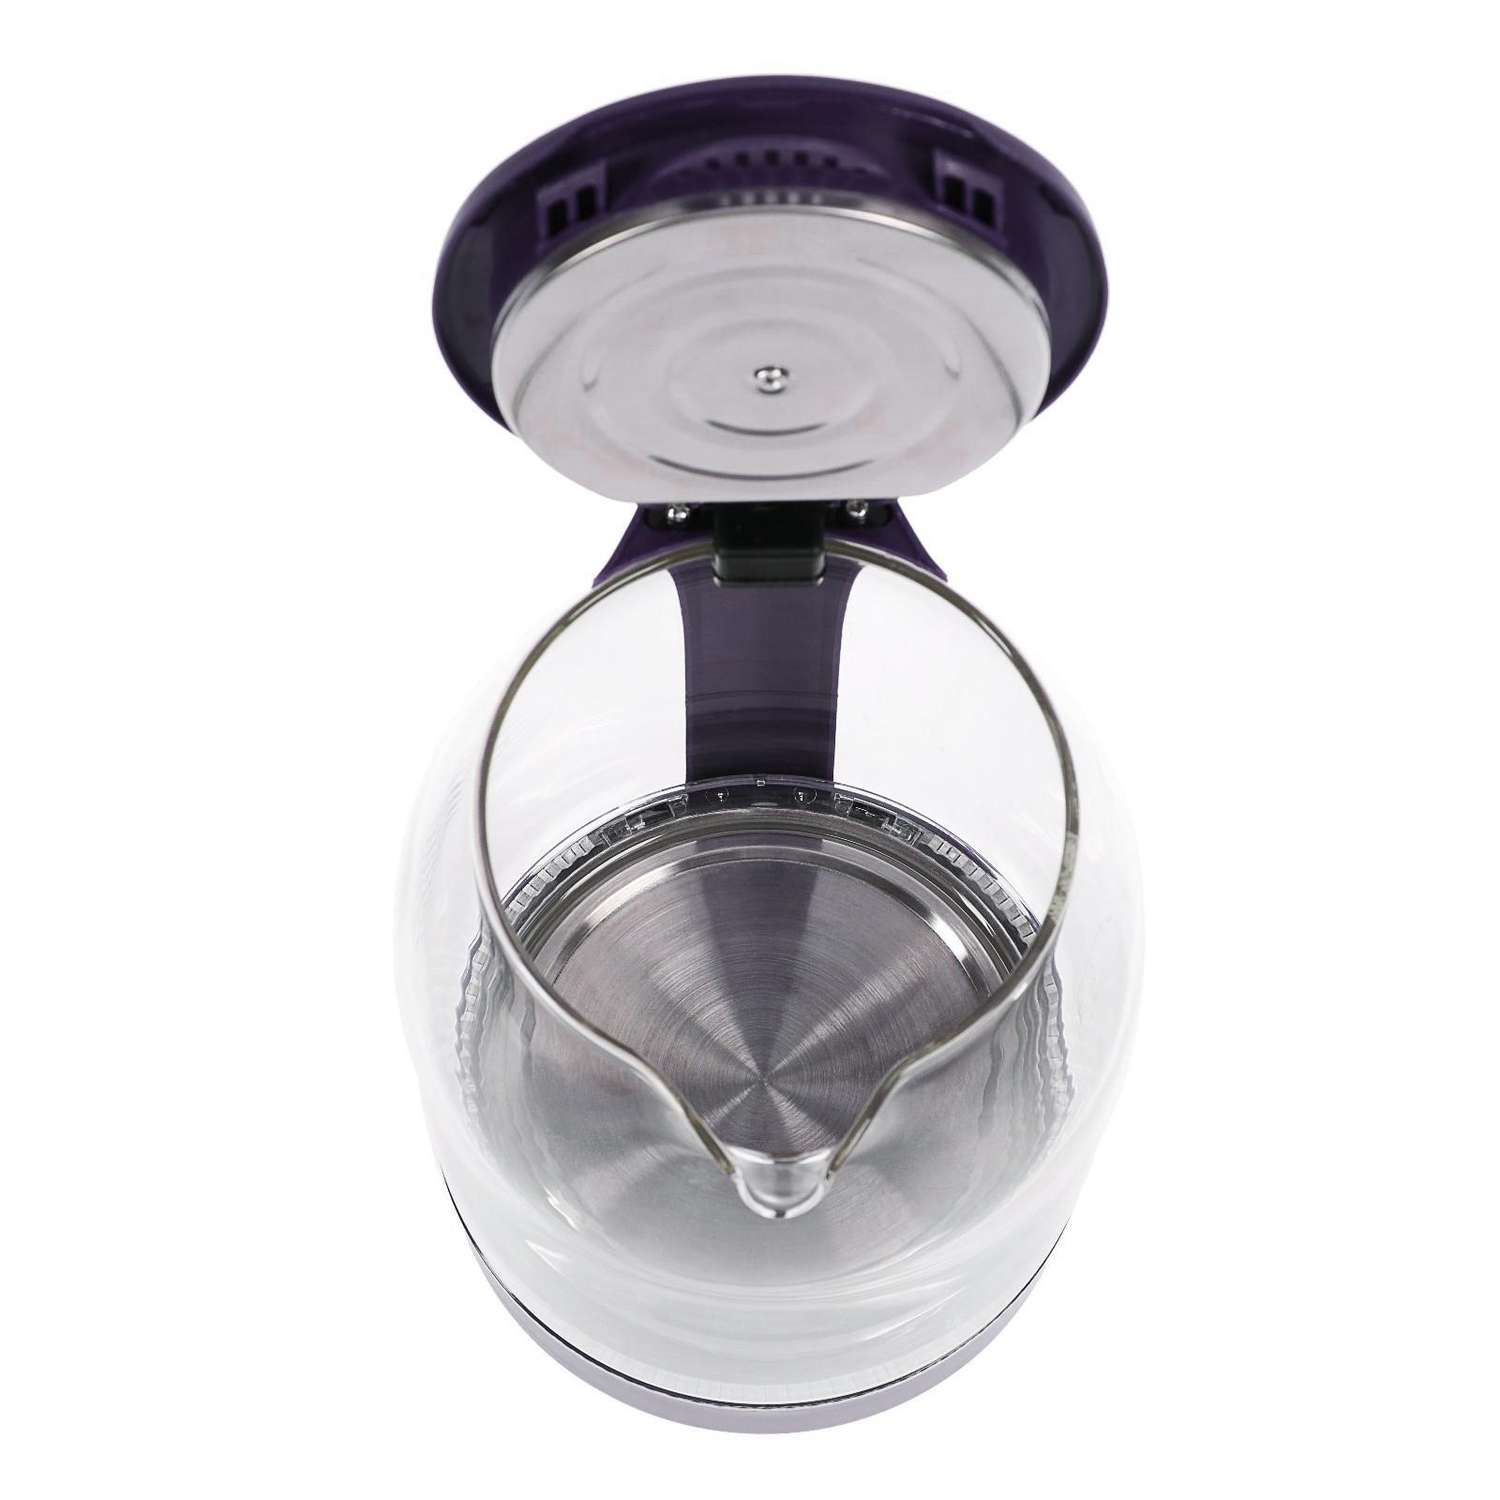 Чайник Luazon Home электрический LSK-1809 стекло 1.8 л 1500 Вт подсветка фиолетовый - фото 6